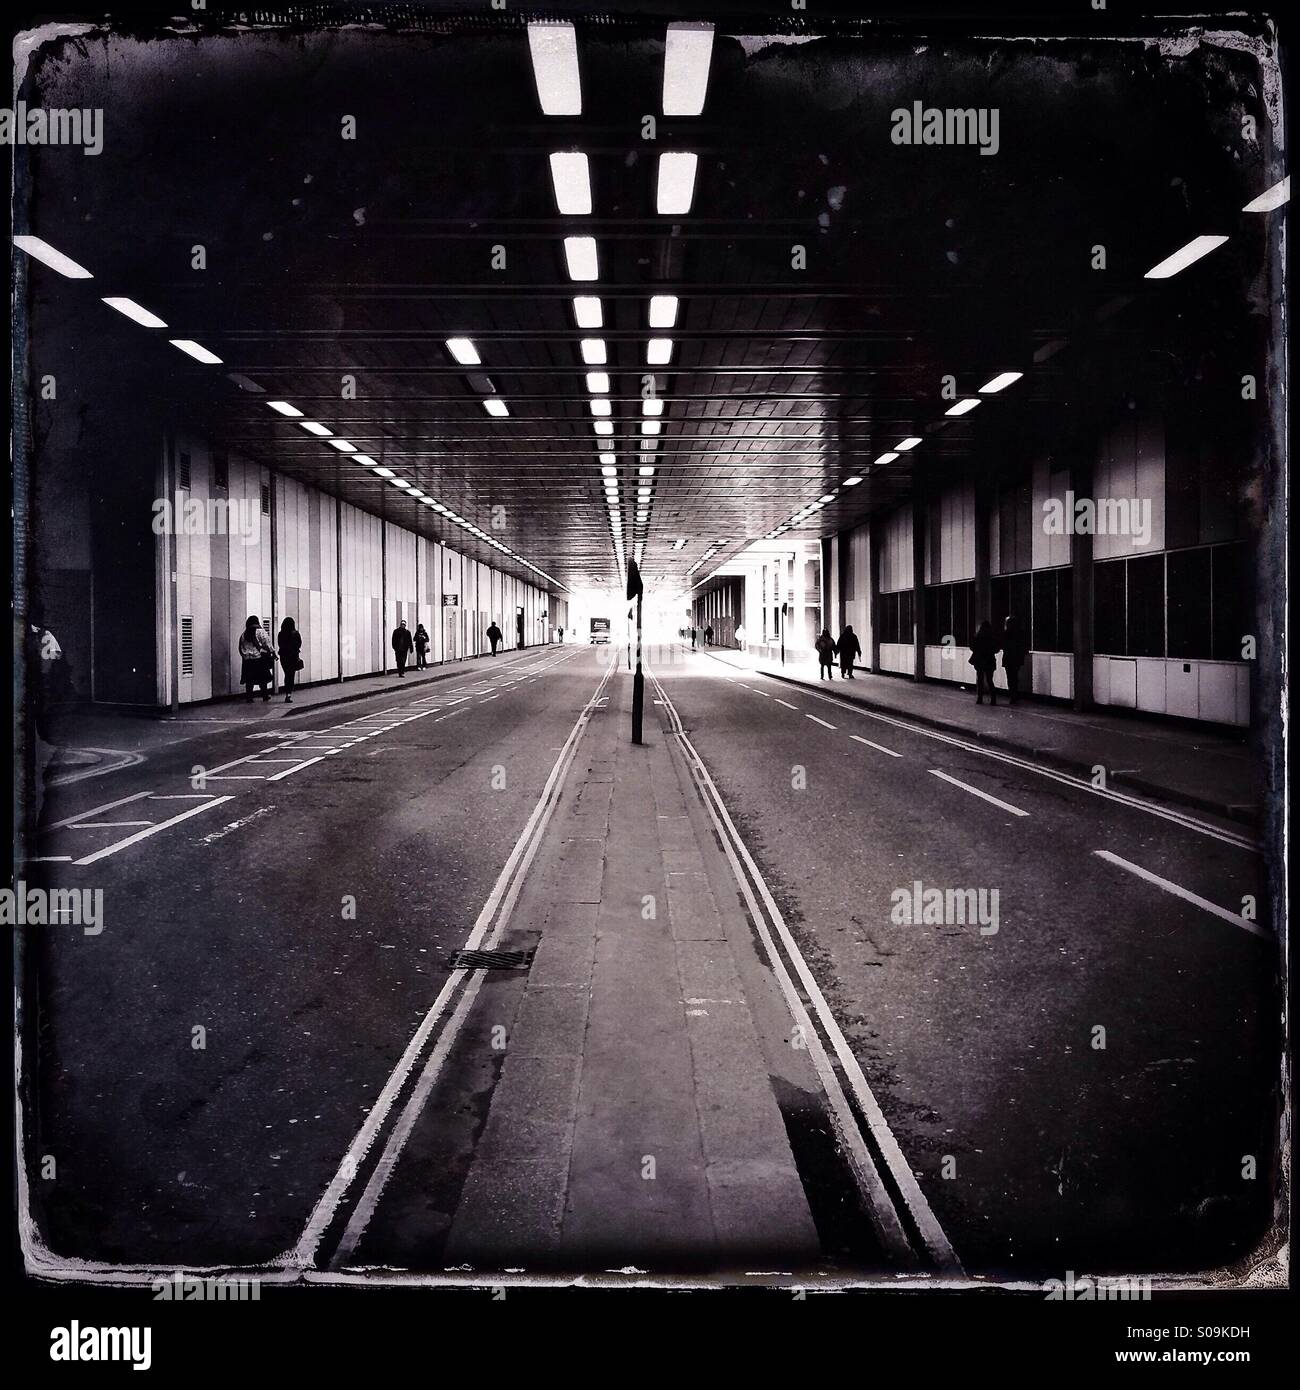 Vintage-Stil-schwarz / weiß Hipstamatic Foto von Beech Street Tunnel im Barbican, London, UK. Stockfoto